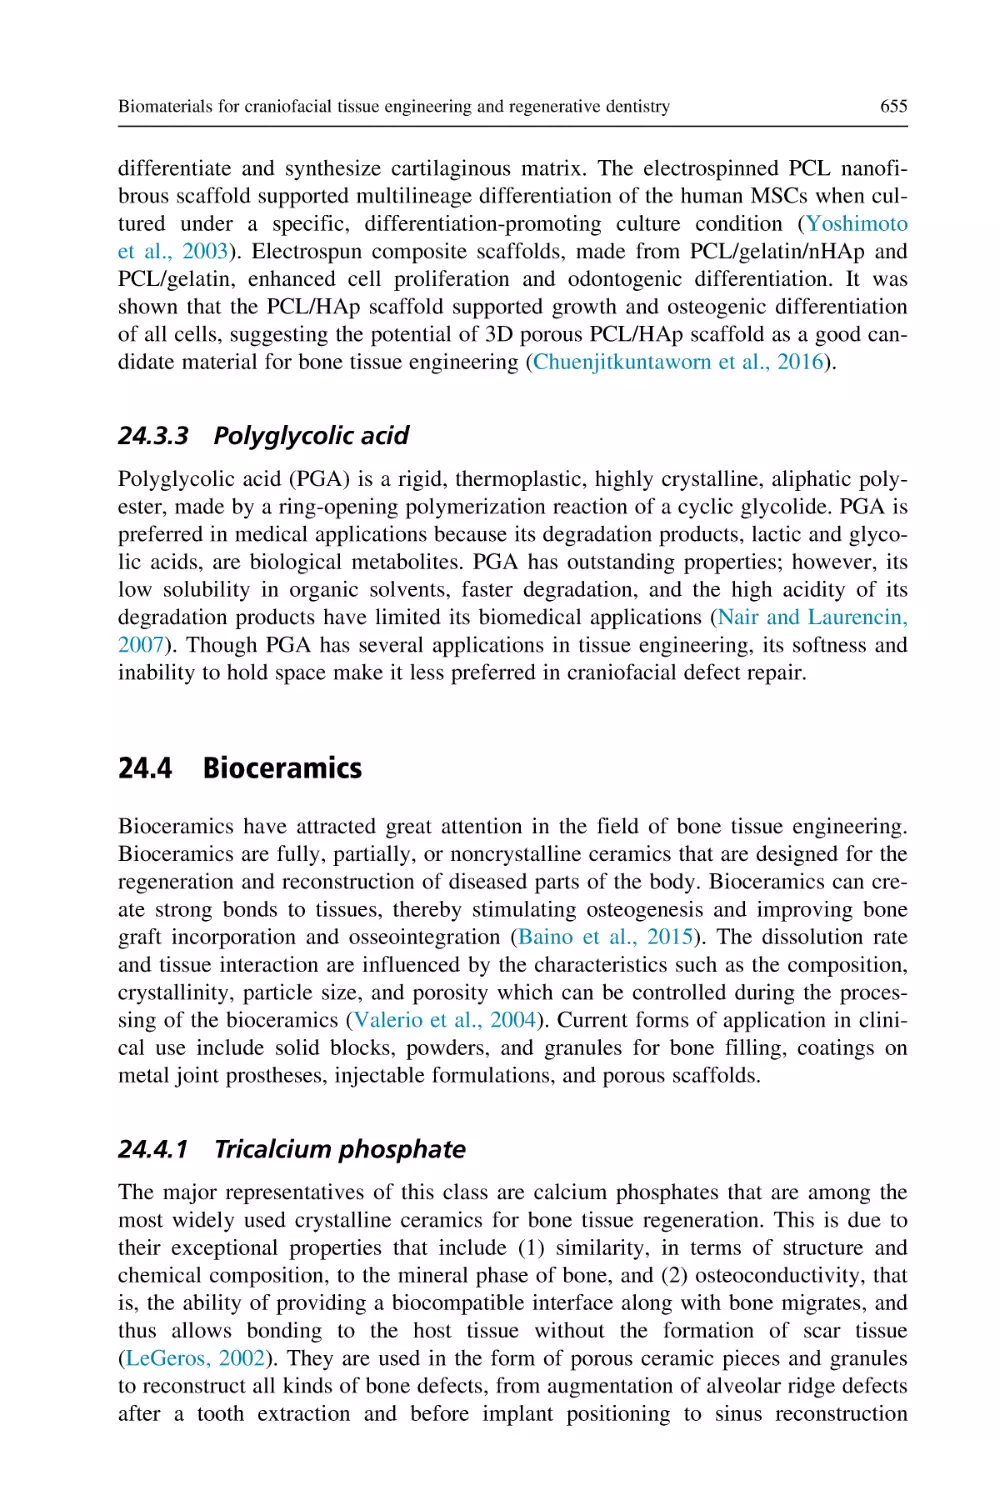 24.3.3 Polyglycolic acid
24.4 Bioceramics
24.4.1 Tricalcium phosphate